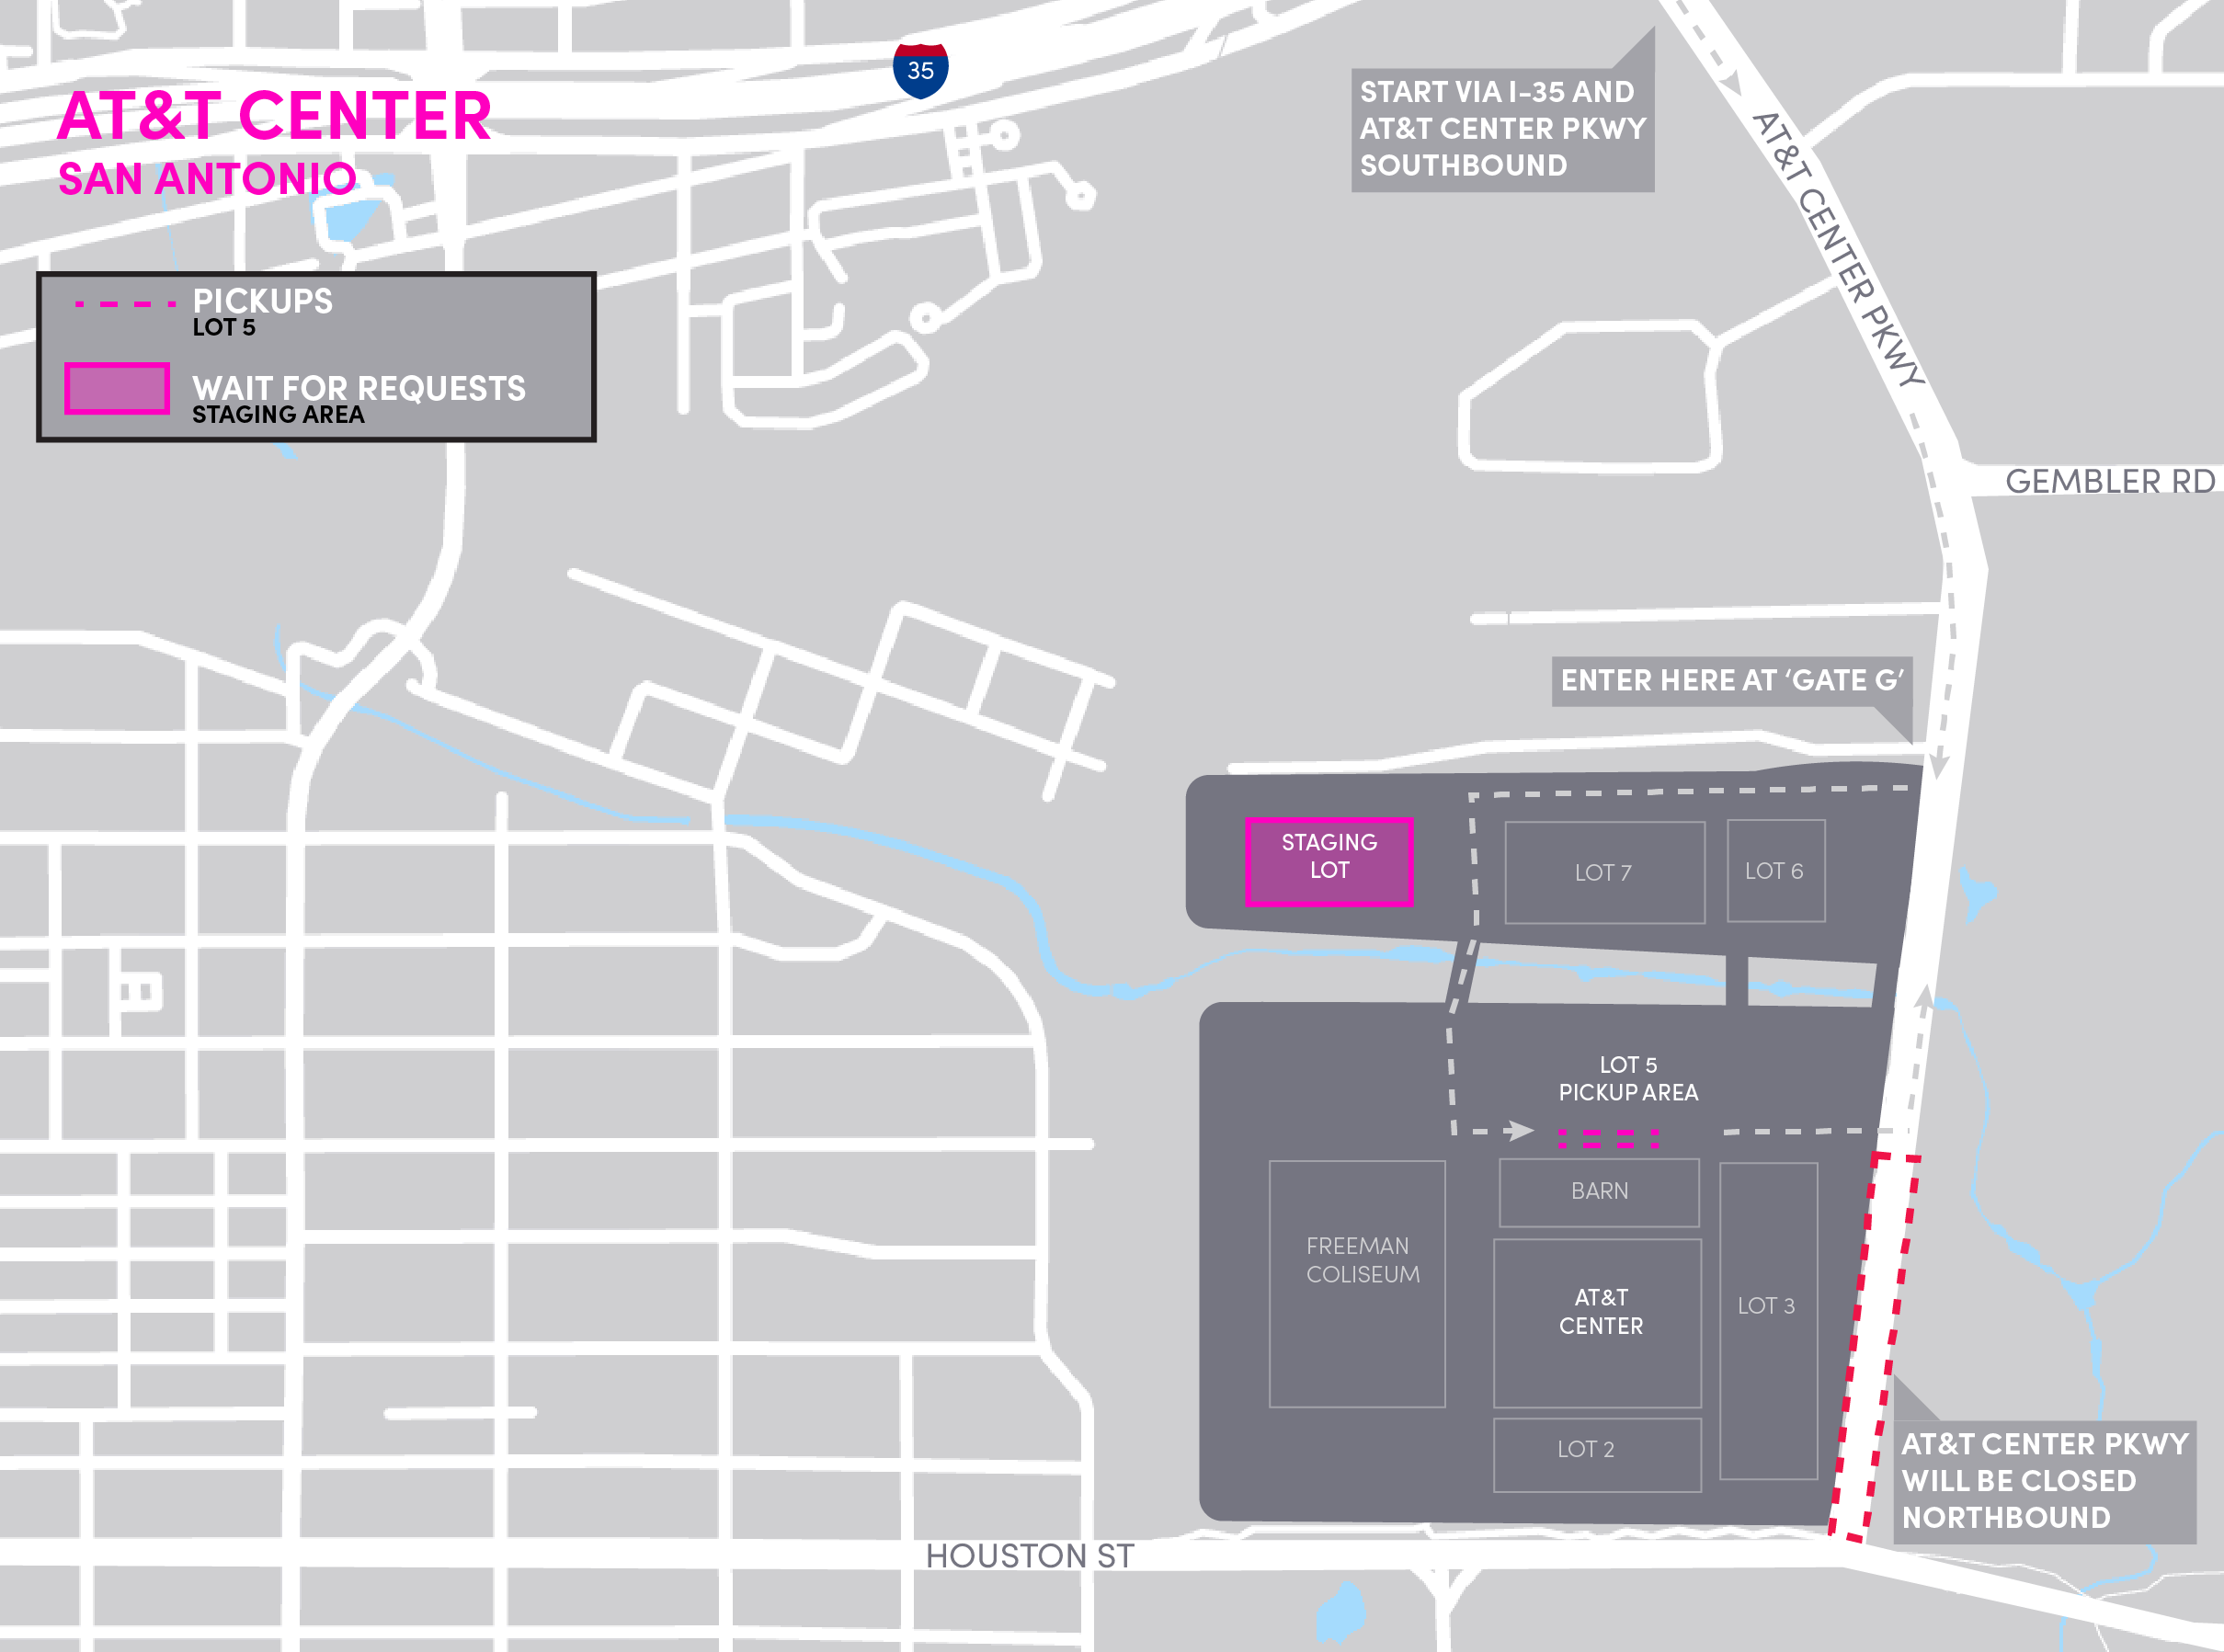 Plan du centre AT&T à San Antonio, détaillant les lieux d'embarquement et de la zone d'attente.